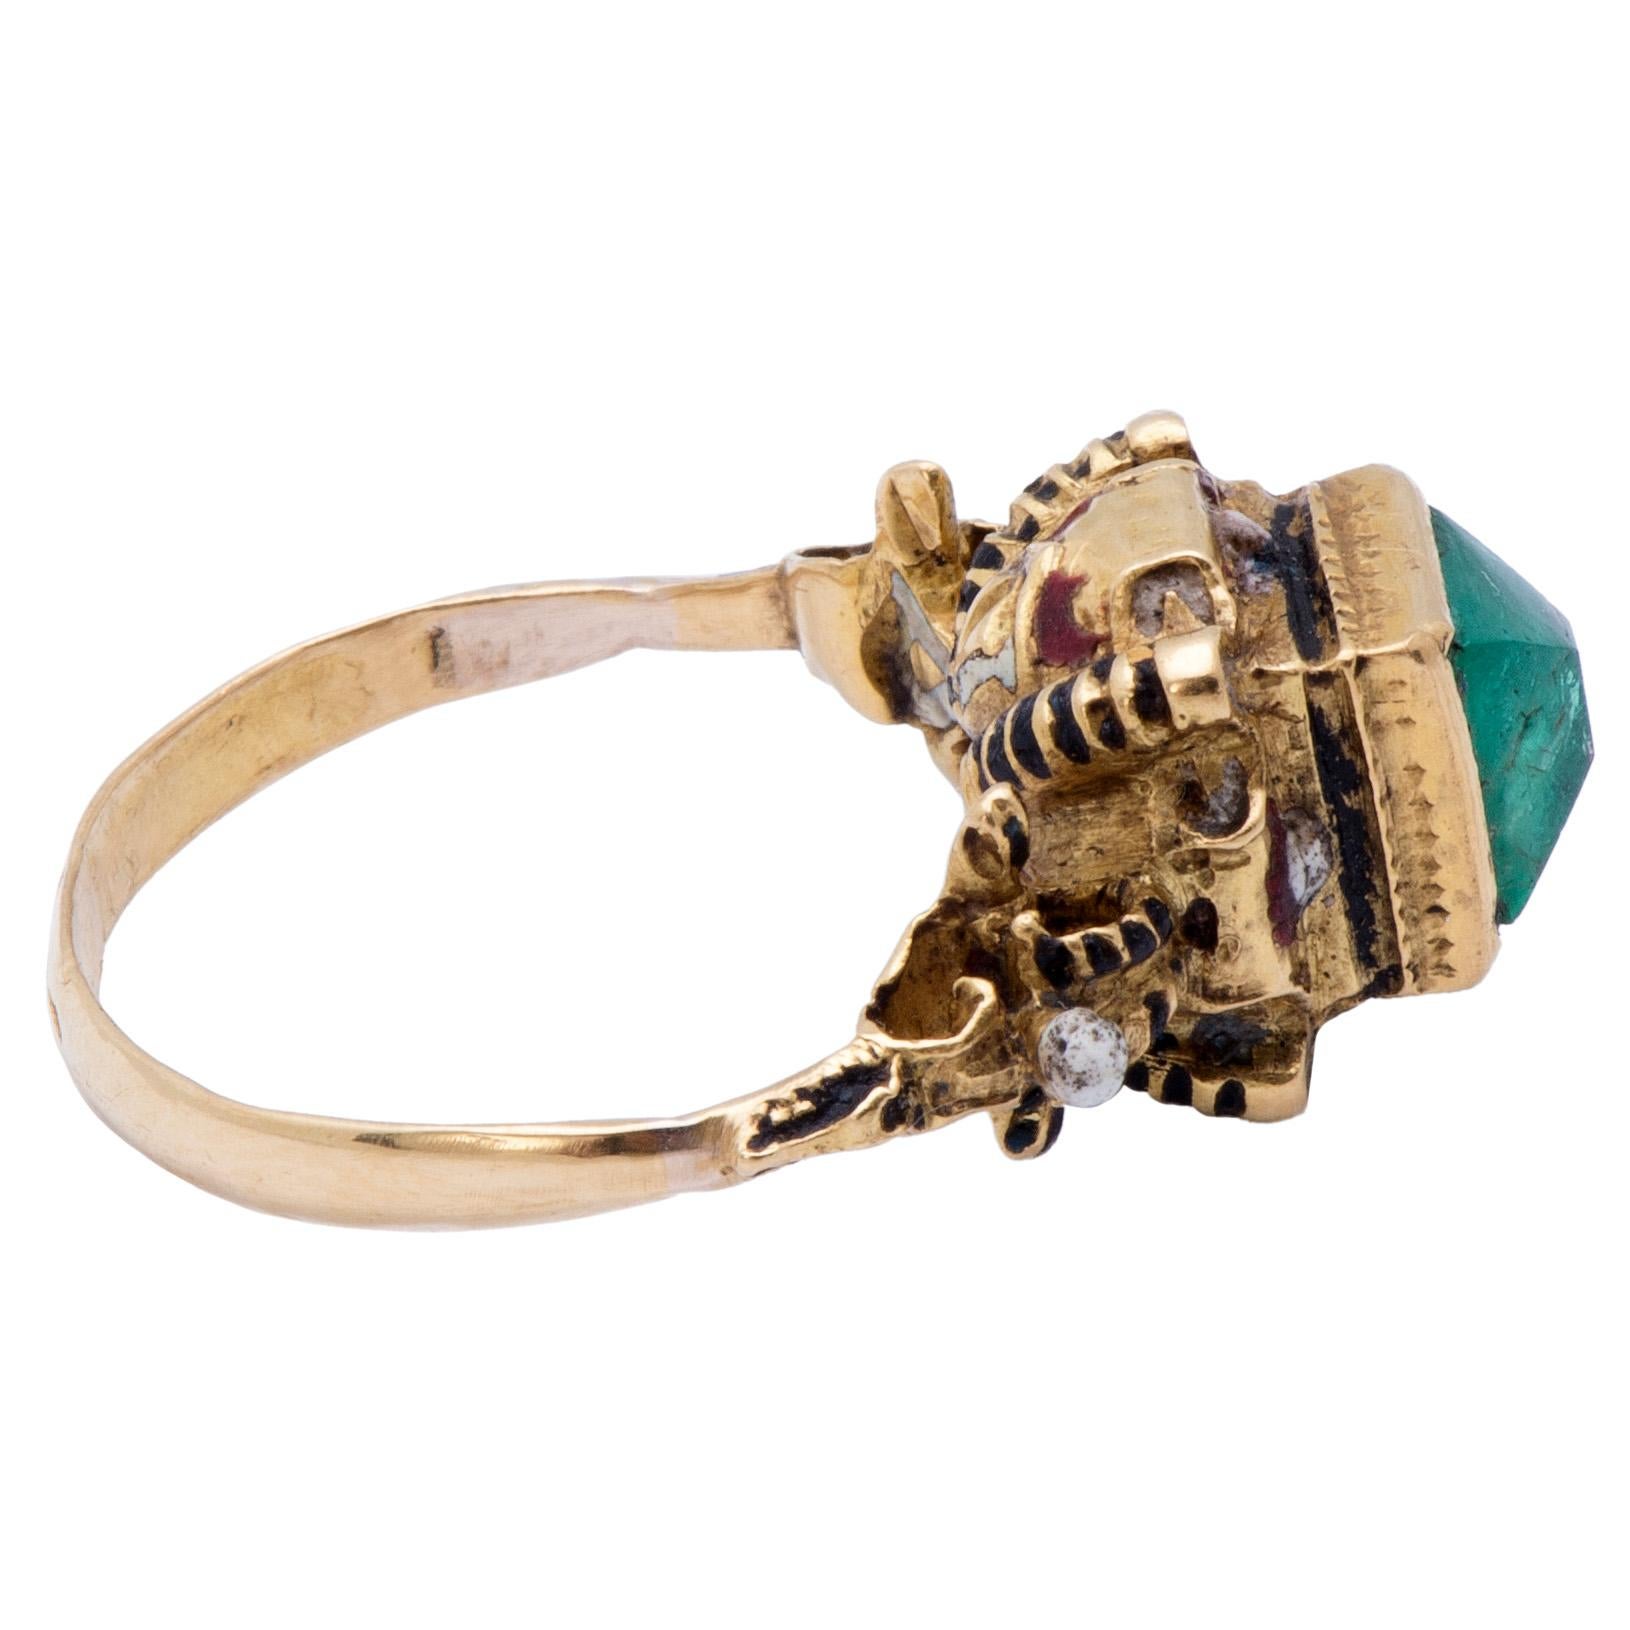 Women's or Men's Antique Gold Renaissance Revival Ring